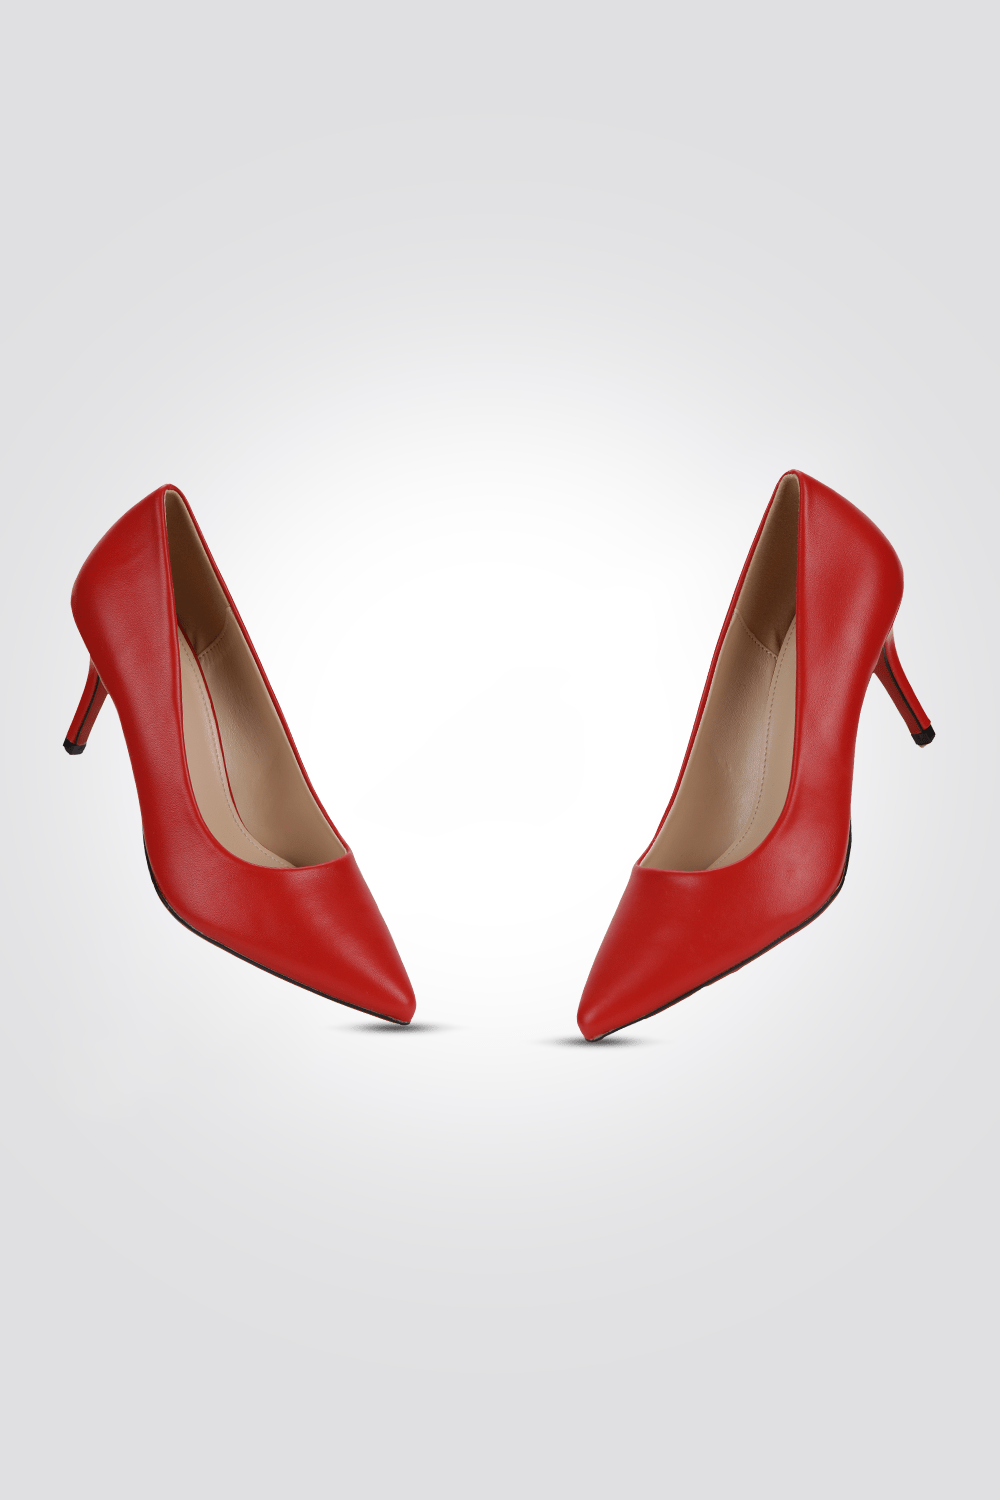 KENNETH COLE - נעל עקב STILETTO HEEL בצבע אדום - MASHBIR//365